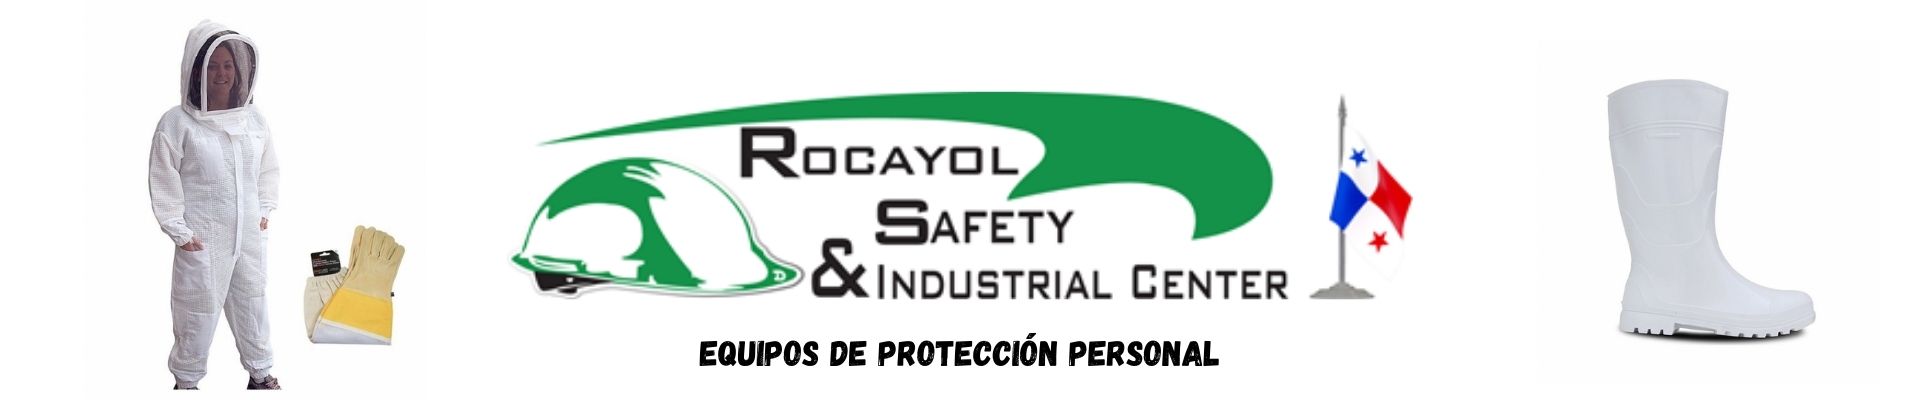 Banner Rocayol Safety & Industrial Center